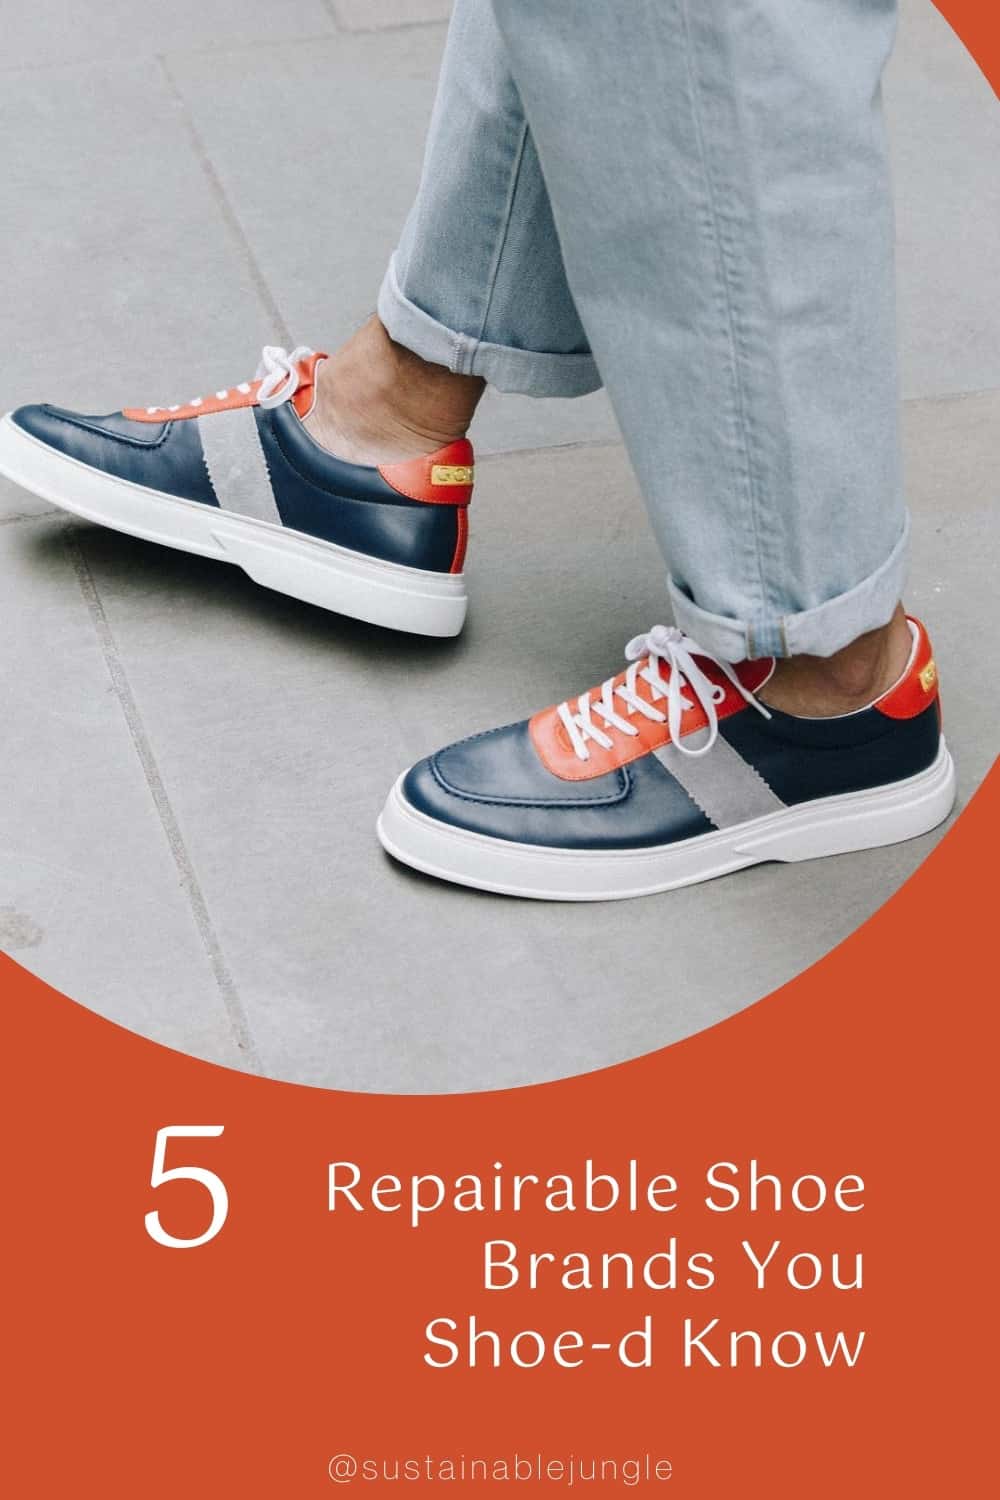 你应该知道的5个最佳可修鞋品牌#可修鞋#可修鞋品牌#whatisarepairableshoe #最佳可修鞋#可持续丛林图片来源:GORAL